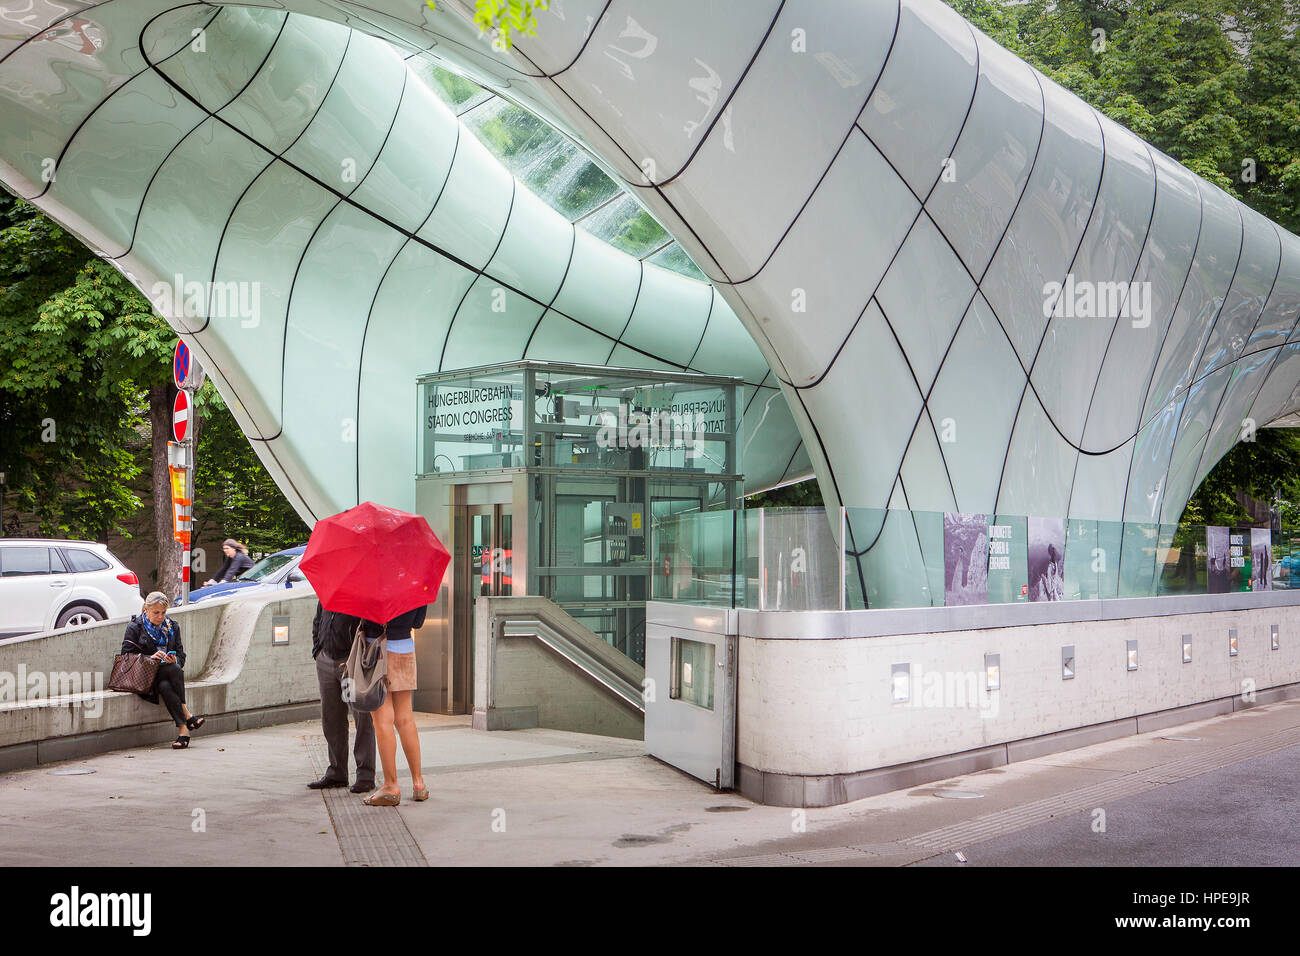 La station de funiculaire Hungerburgbahn, architecte Zaha Hadid, Innsbruck, Tyrol, Autriche Banque D'Images